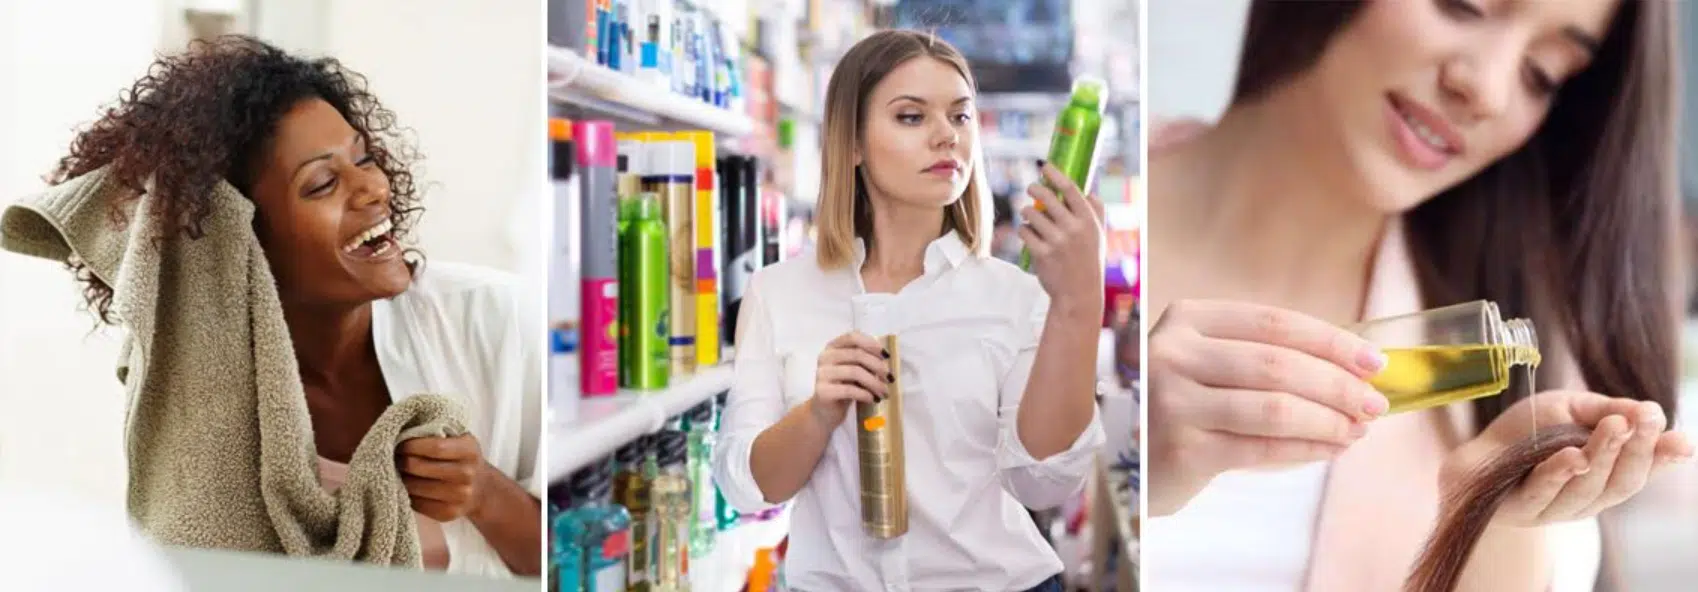 imagens de mulheres comprando e usando produtos para hidratar o cabelo